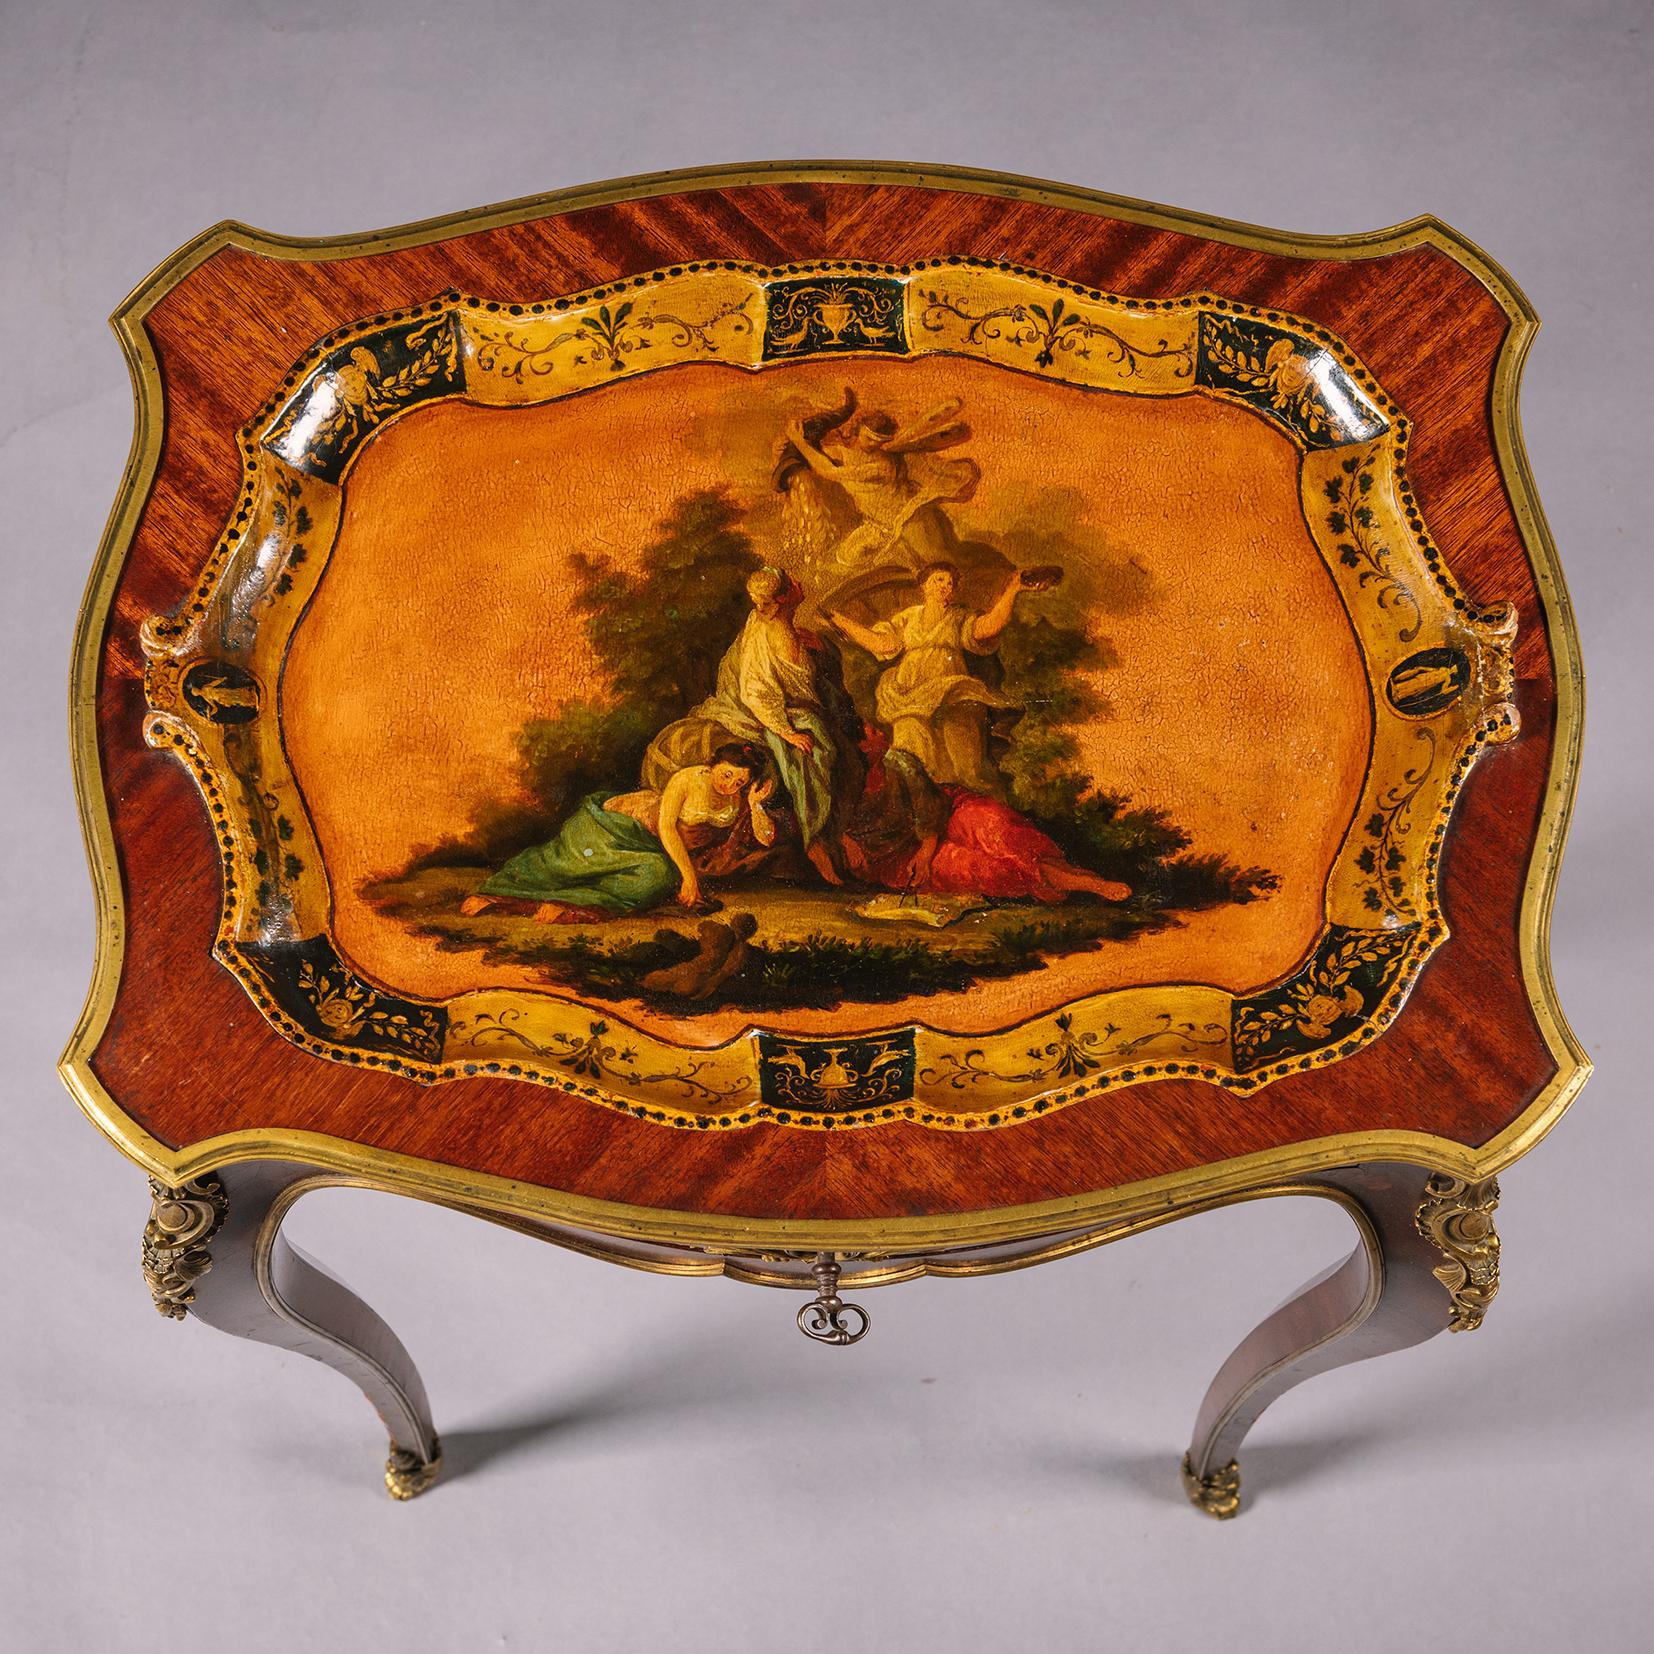 Ein feiner Tisch im Stil Louis XV aus vergoldetem Bronze und lackiertem Bois Satiné mit Tablettplatte von Henry Dasson. 

Dieser elegante Tisch ist auf der Oberseite mit einem lackierten Tablett versehen, das mit einer Szene von Glück und Überfluss